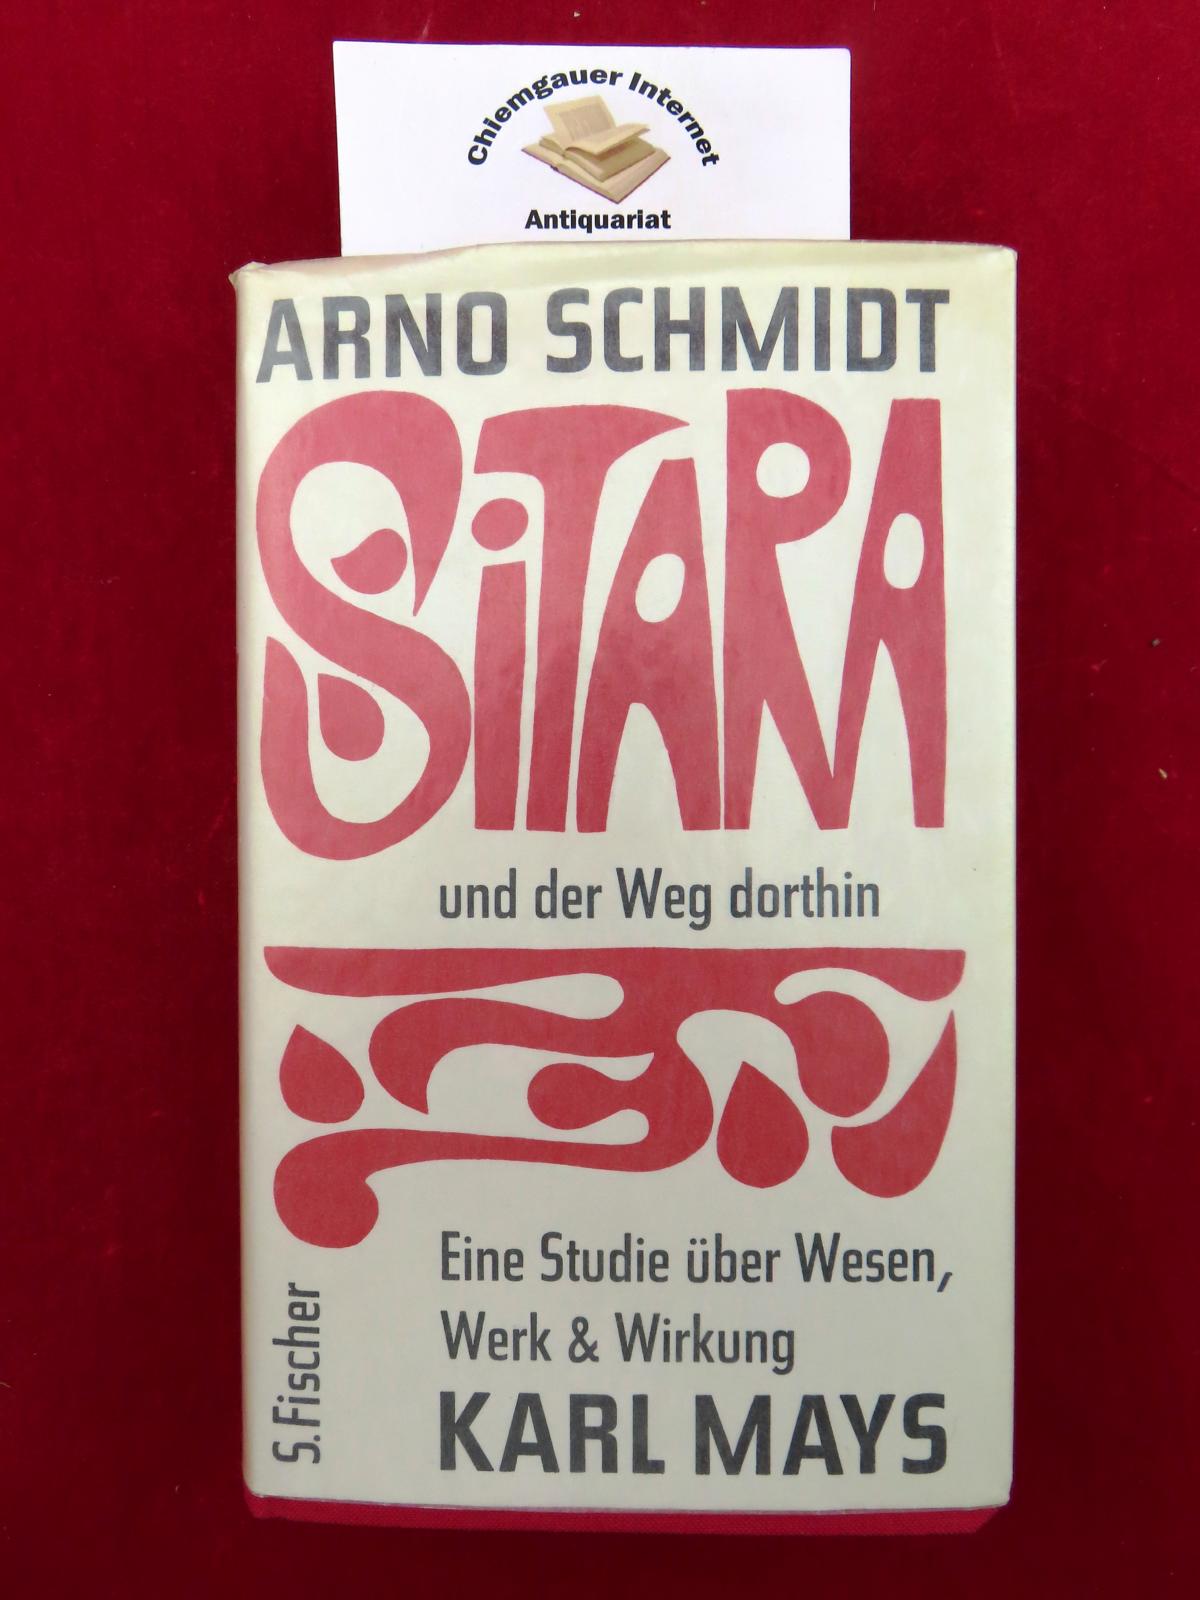 Sitara und der Weg dorthin : Eine Studie über Wesen, Werk & Wirkung Karl May's. - Schmidt, Arno